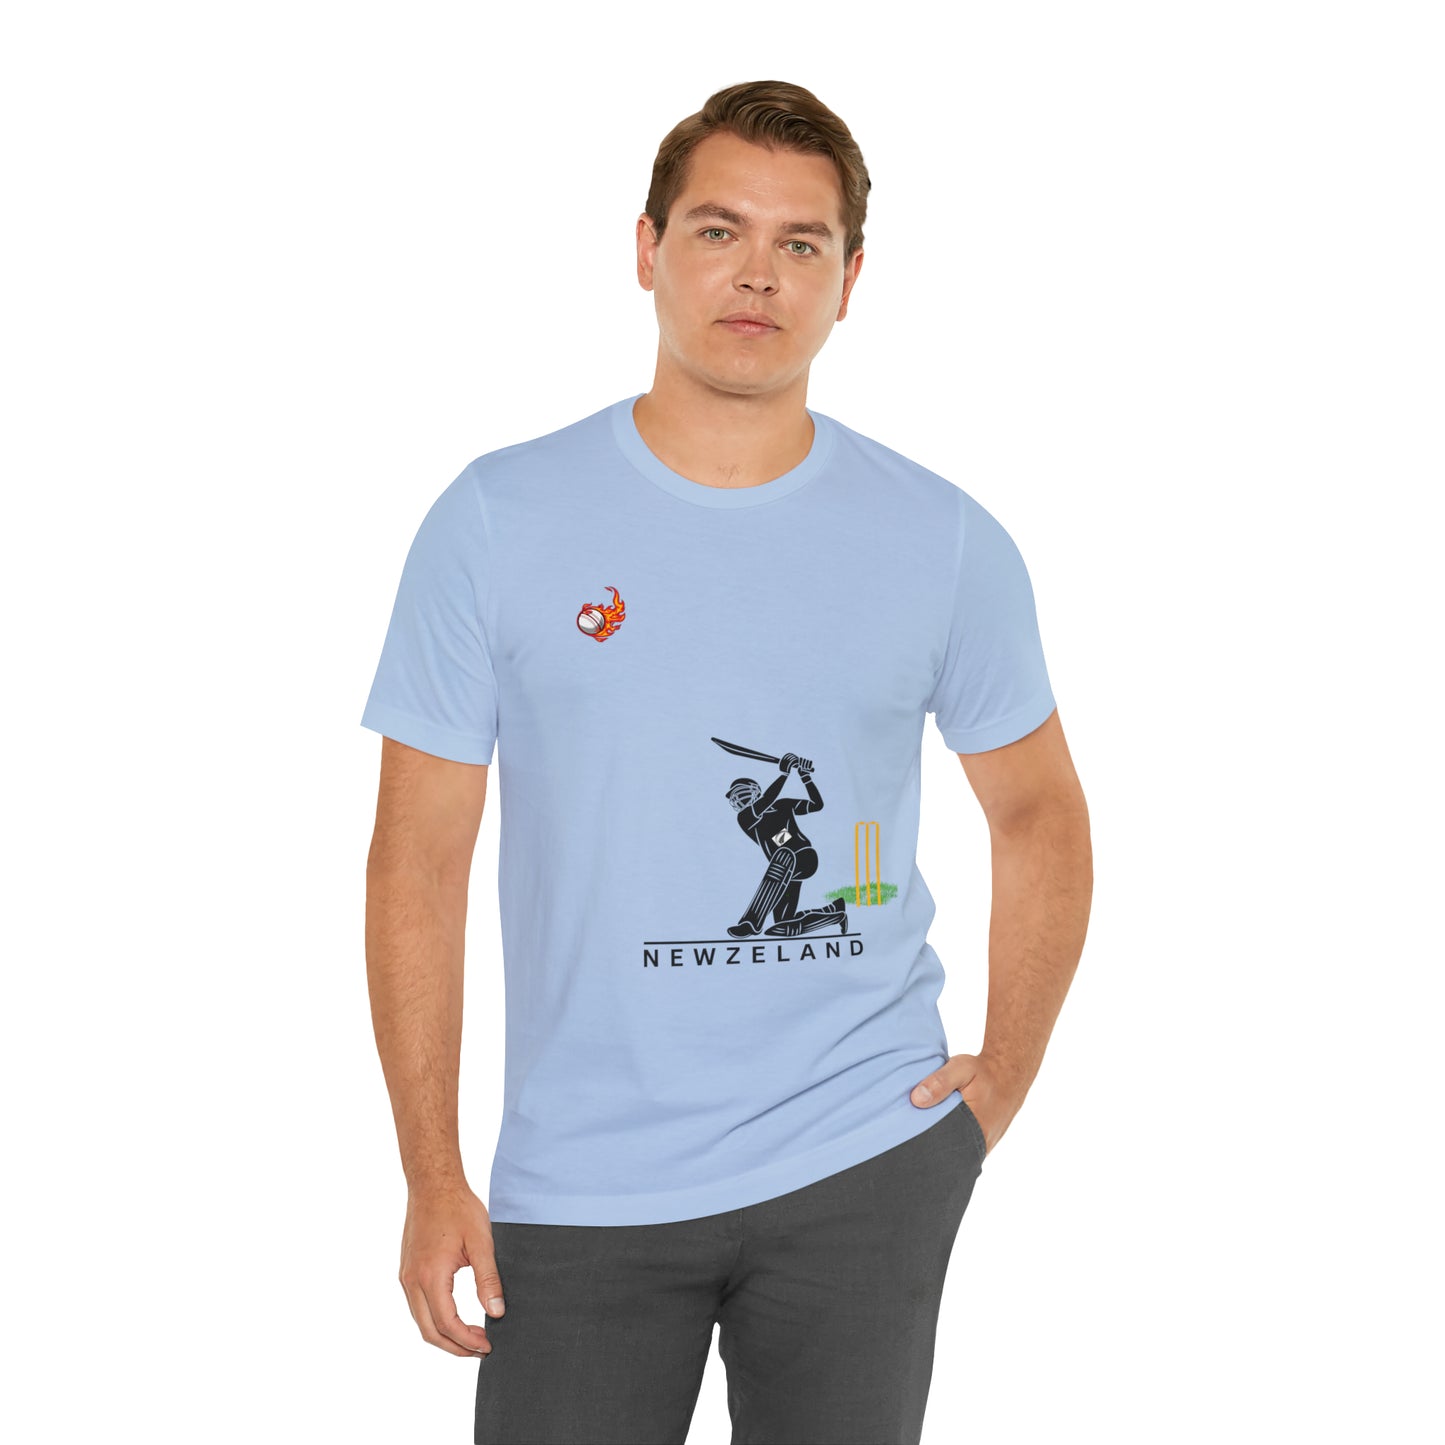 Cricket | 000132 |Unisex Jersey Short Sleeve Tee